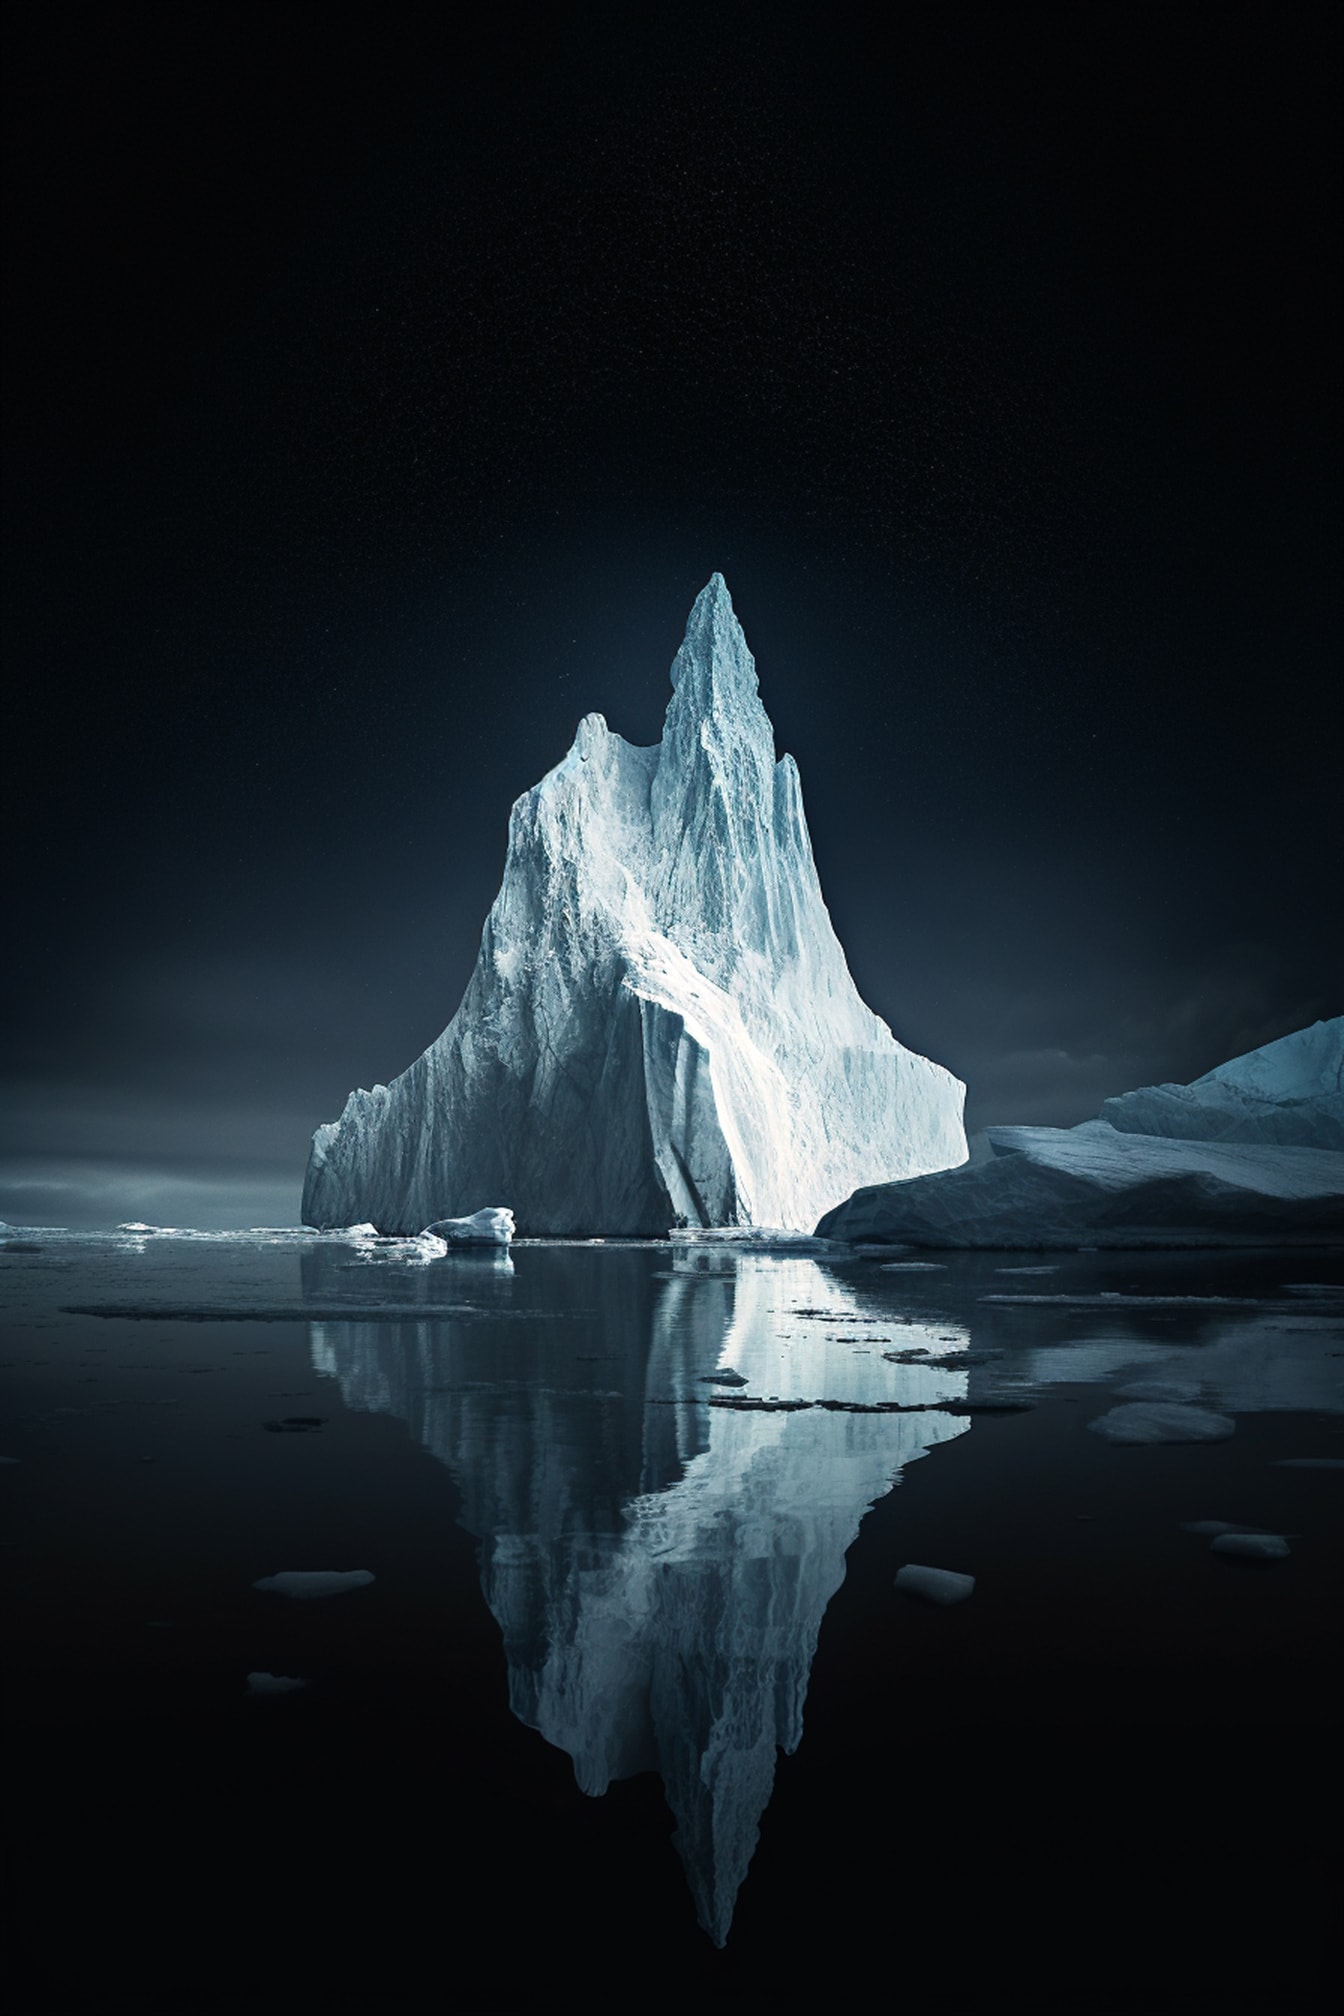 Đêm tối ở Bắc cực với hình minh họa đồ họa tảng băng trôi